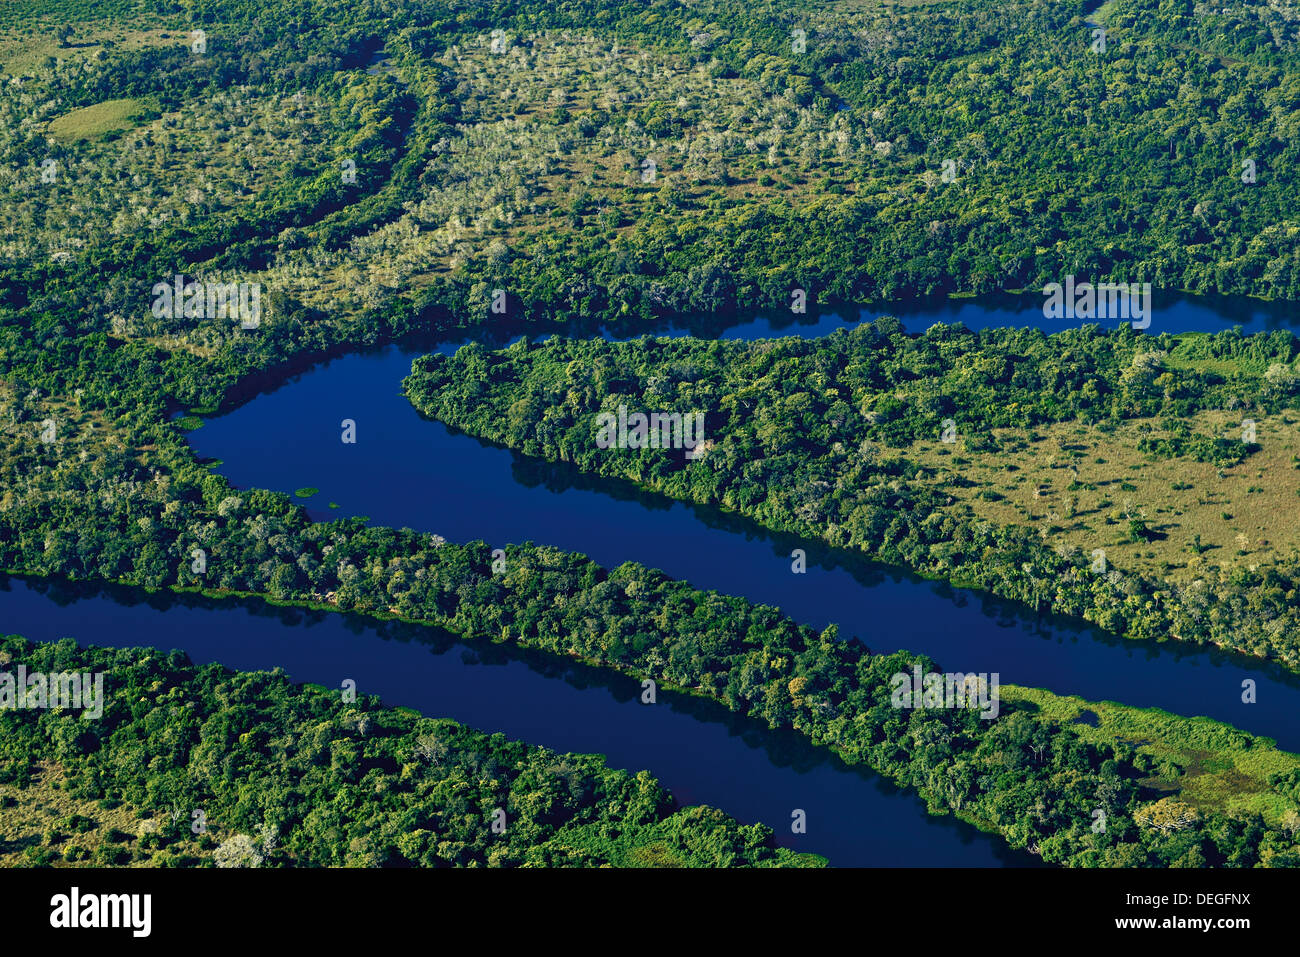 Brésil, Pantanal : Vue aérienne de la rivière Claro près de Poconé Banque D'Images